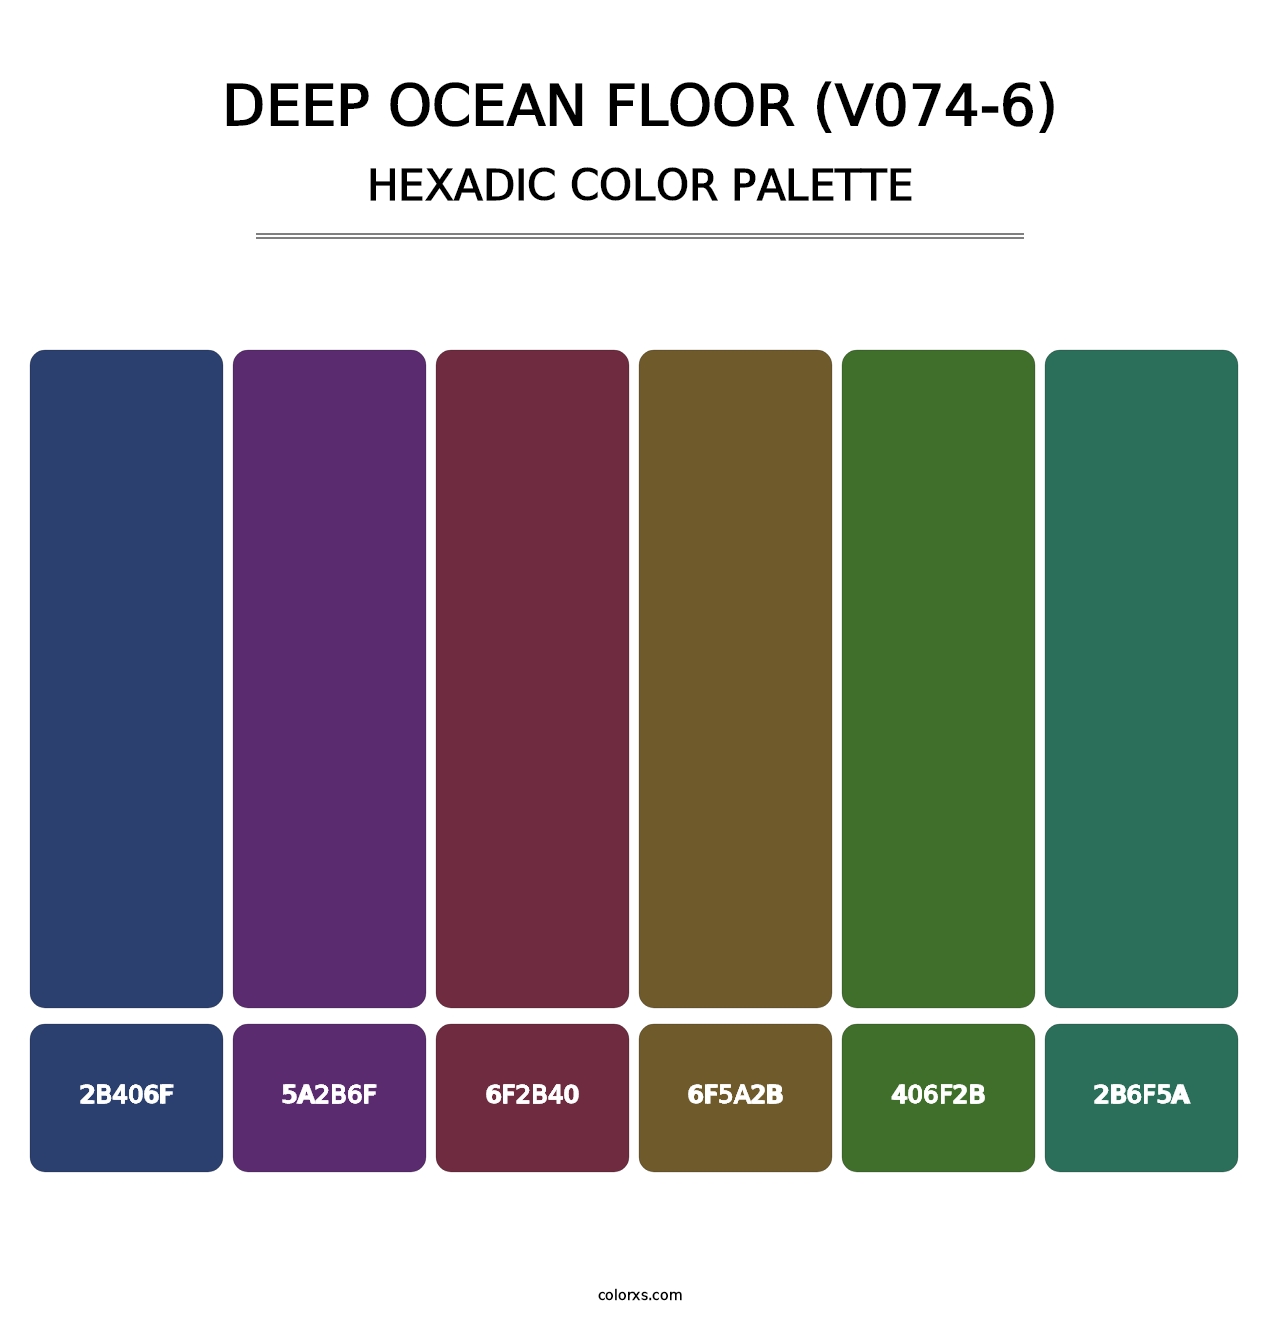 Deep Ocean Floor (V074-6) - Hexadic Color Palette